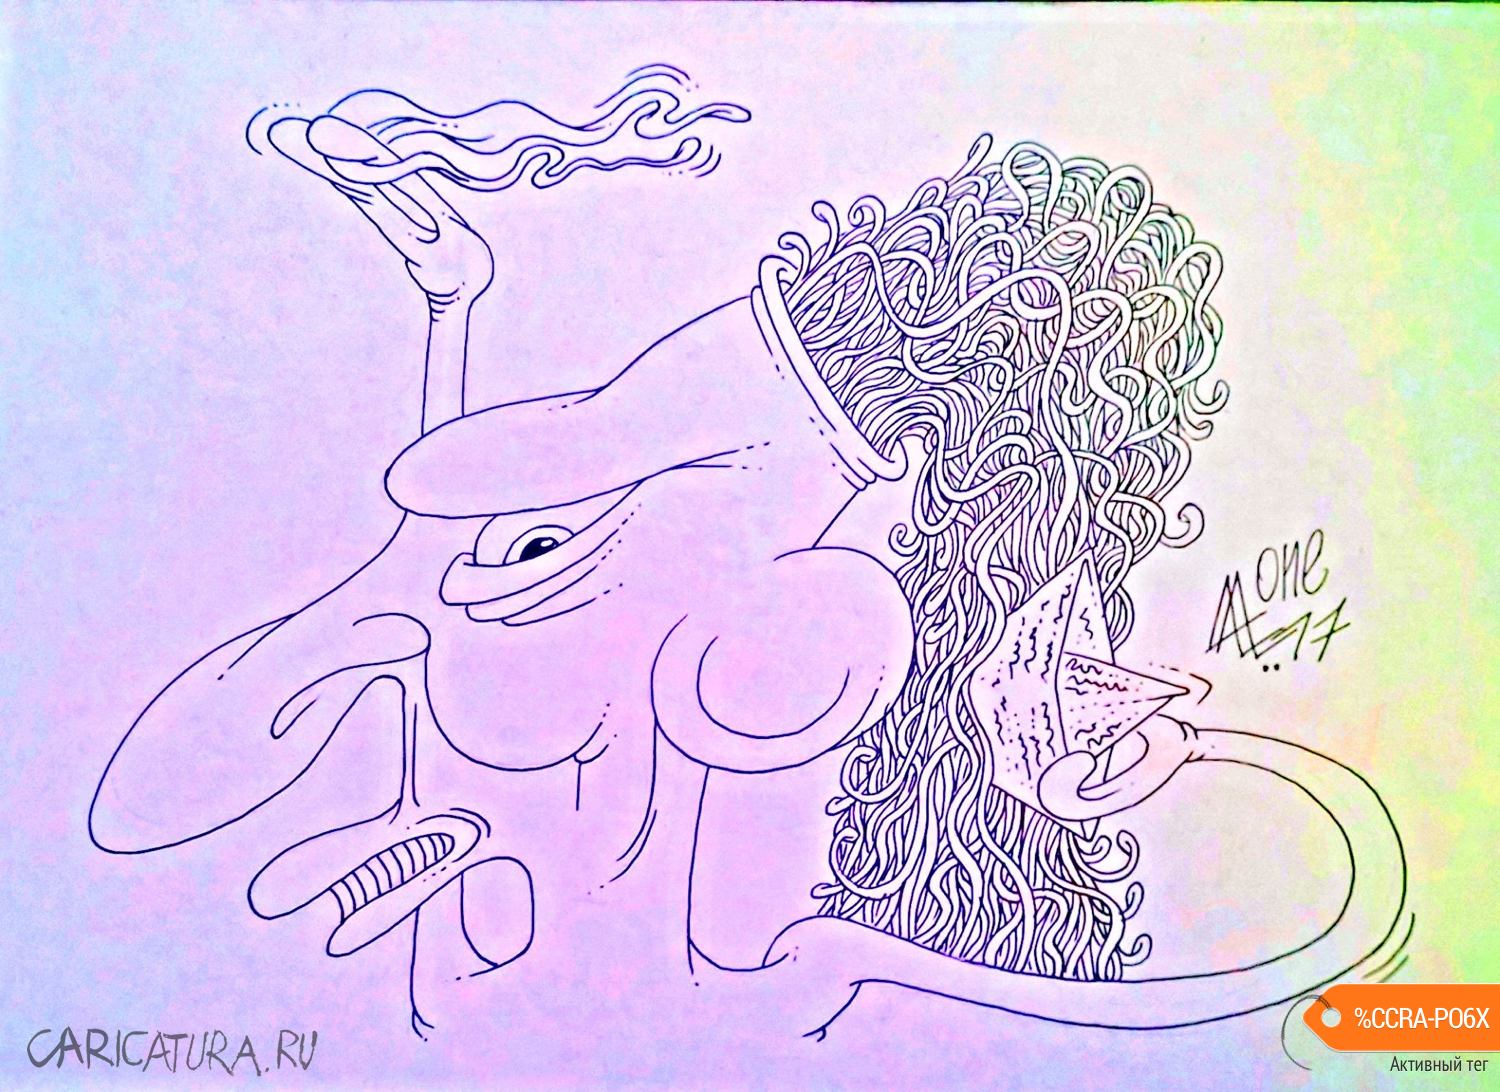 Карикатура "На своей волне", Андрей Лупин